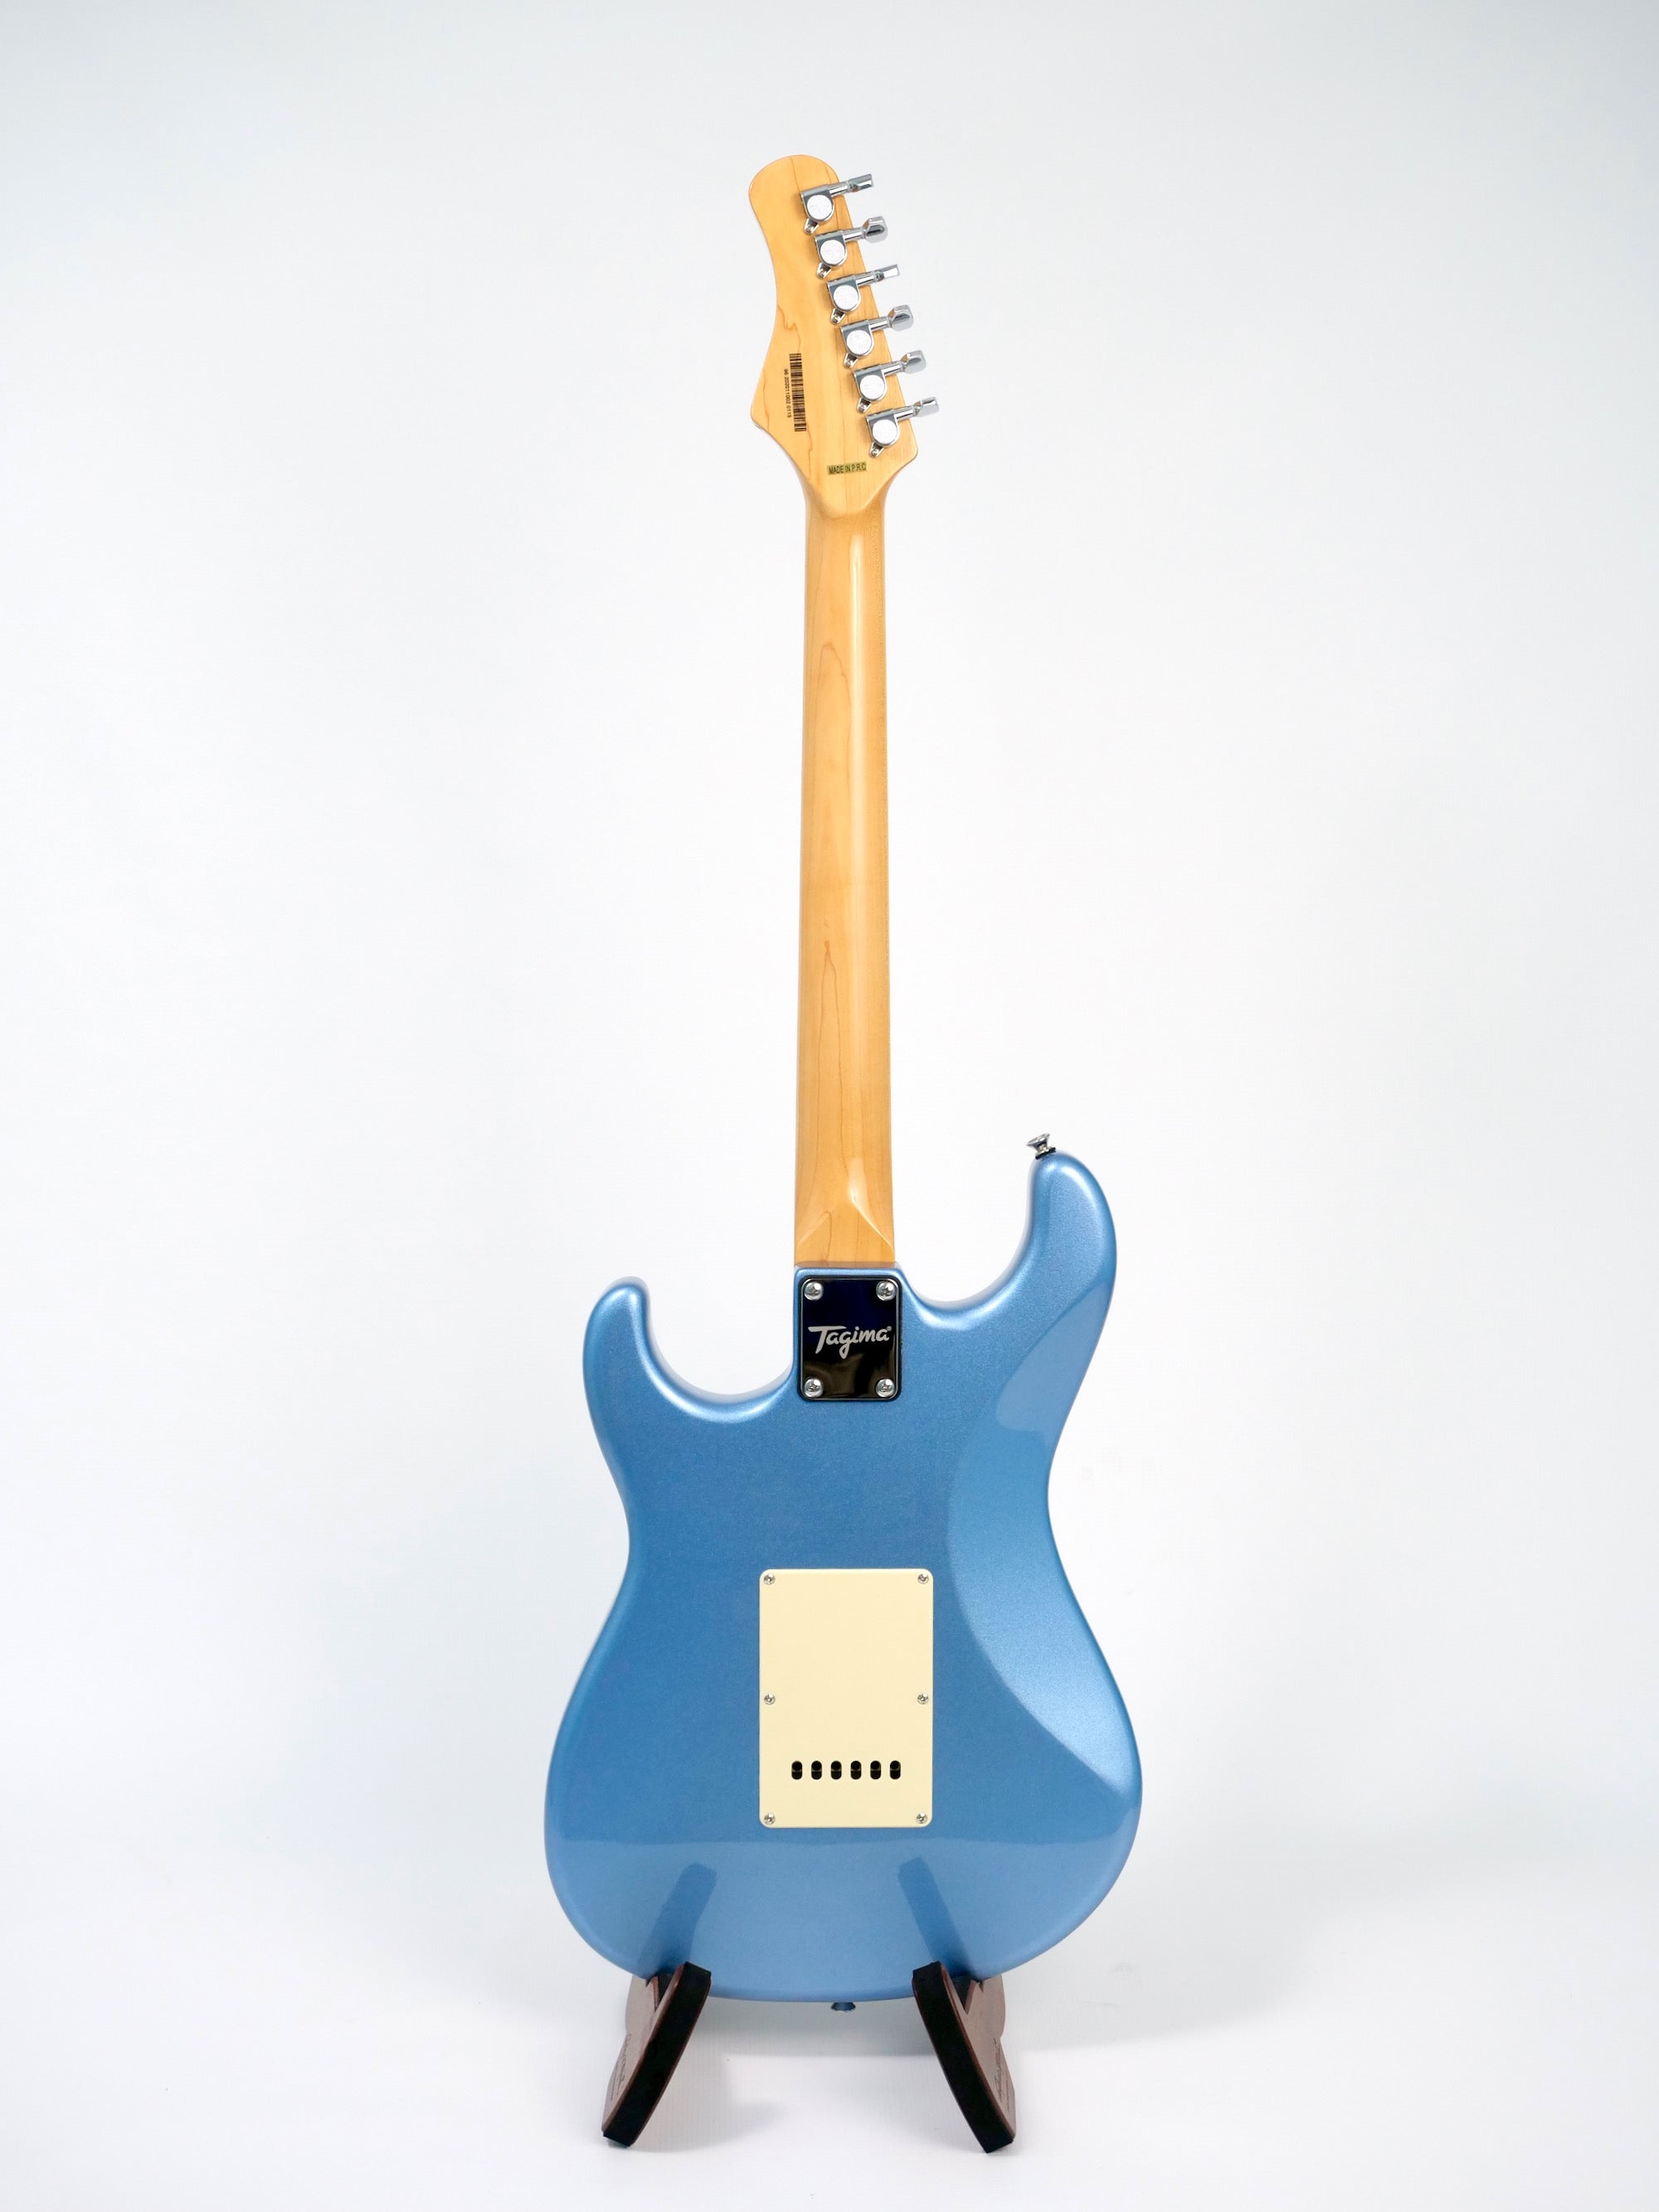 Tagima TG-530 Strat-Style Electric Guitar - Lake Placid Blue TG-530-LPB-LF/MG Back